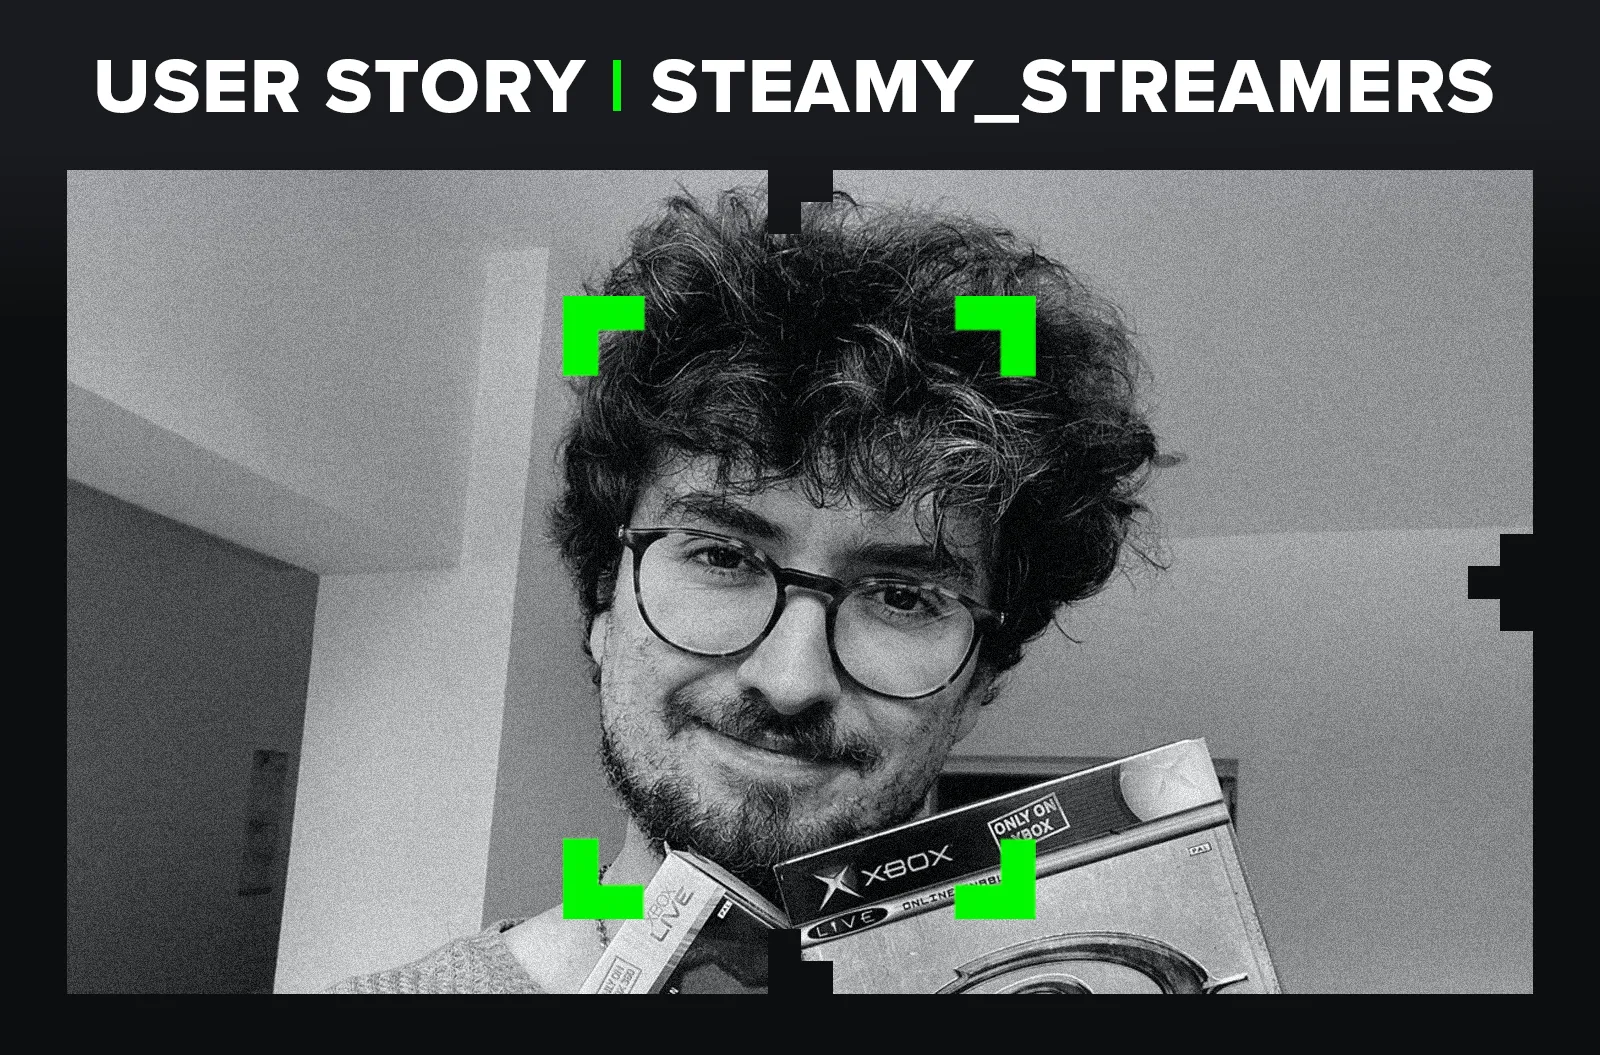 Steamy_Streamers - User Story